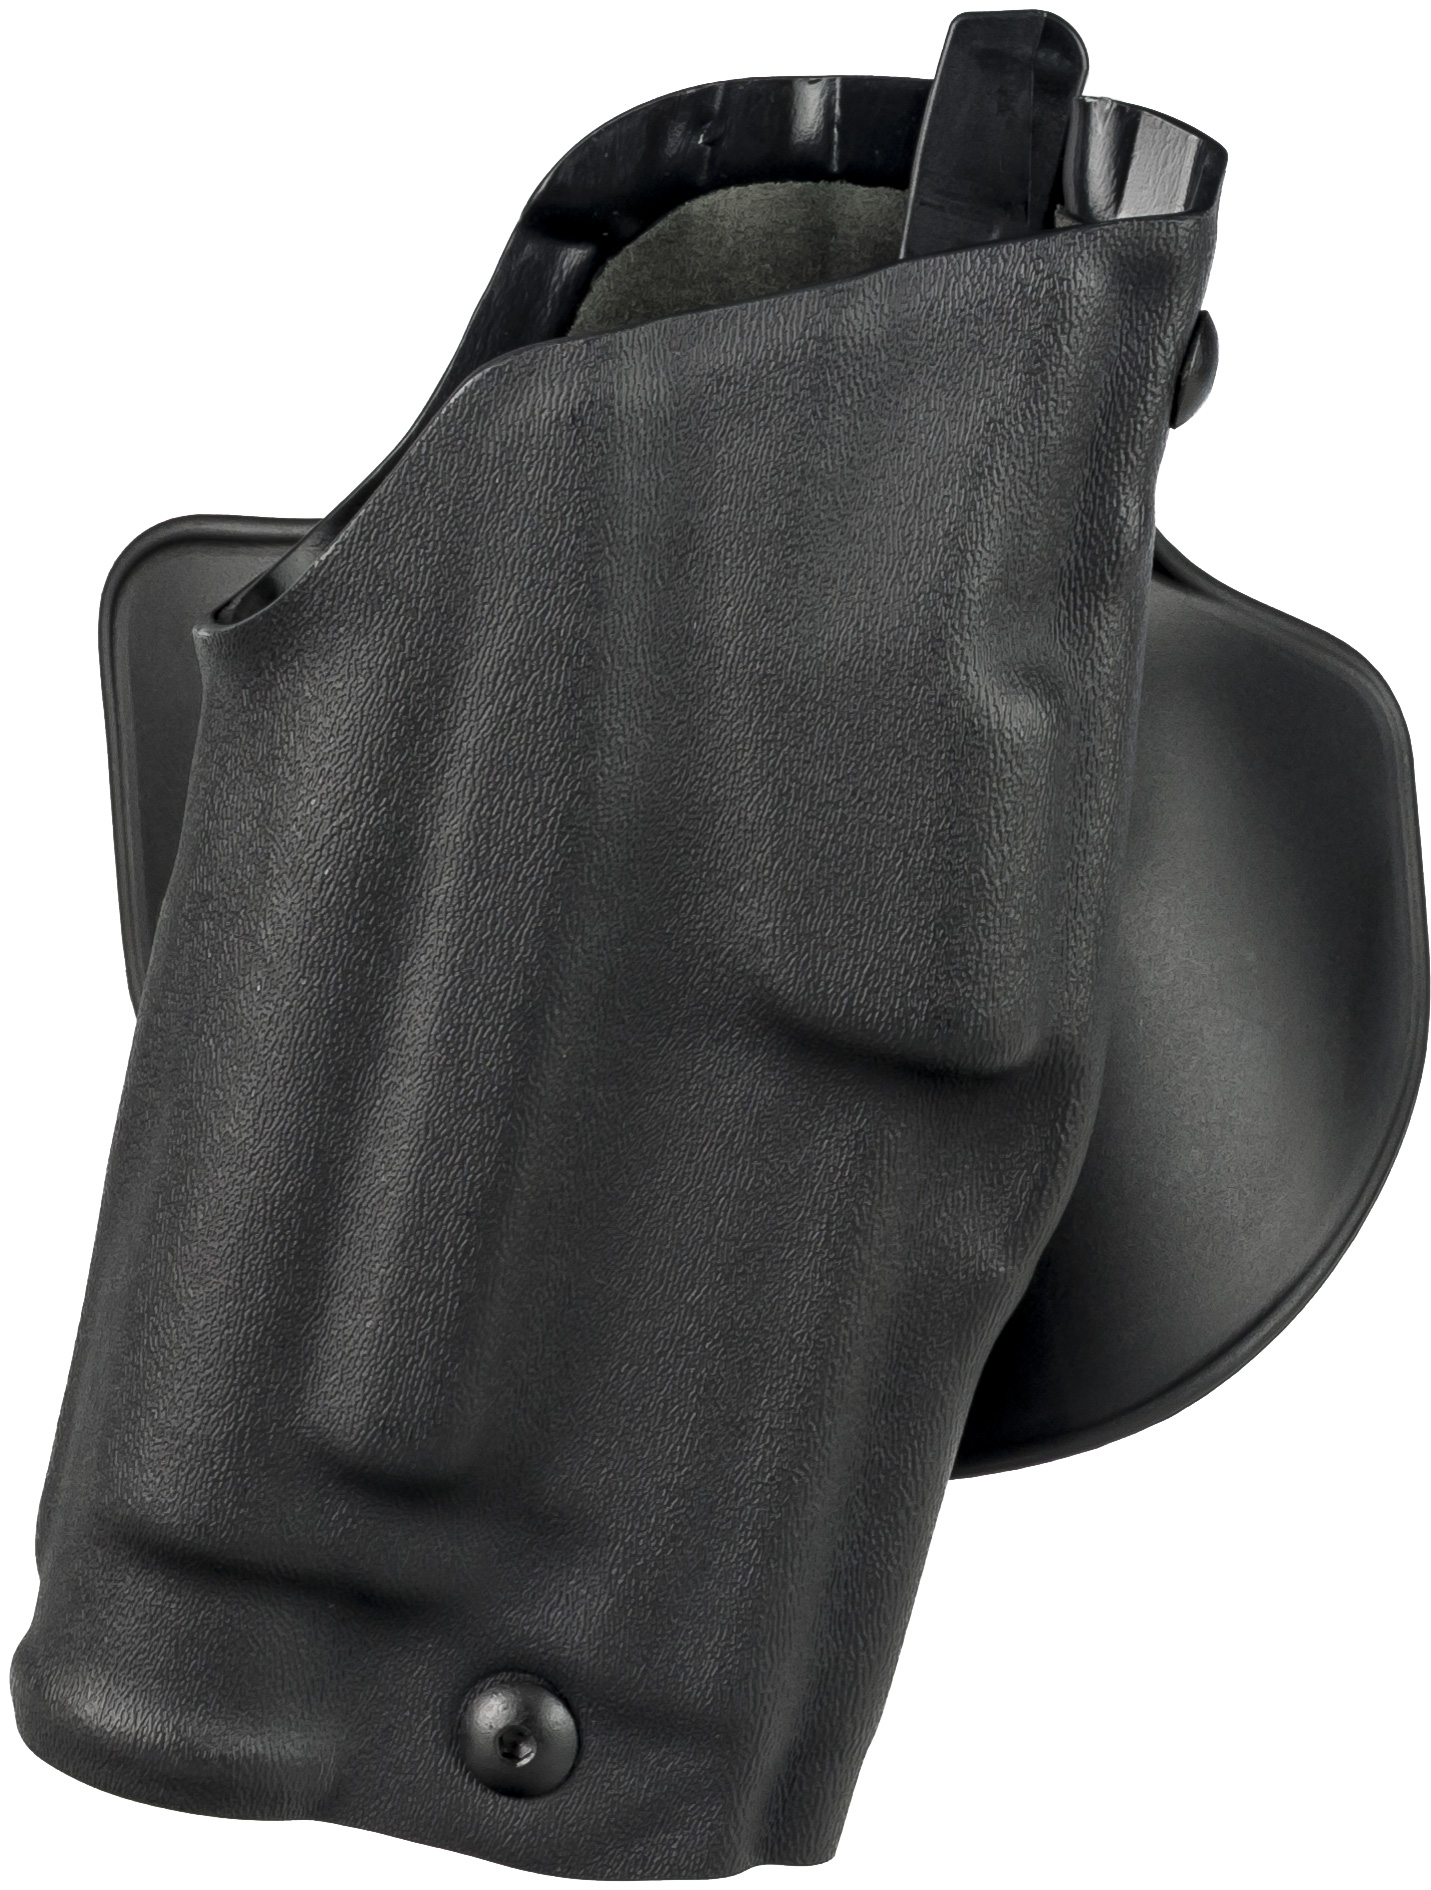 Right Hand Black Safariland 6378 ALS Paddle & Belt Slide Holster Glock 17 22 STX Tactical Belt